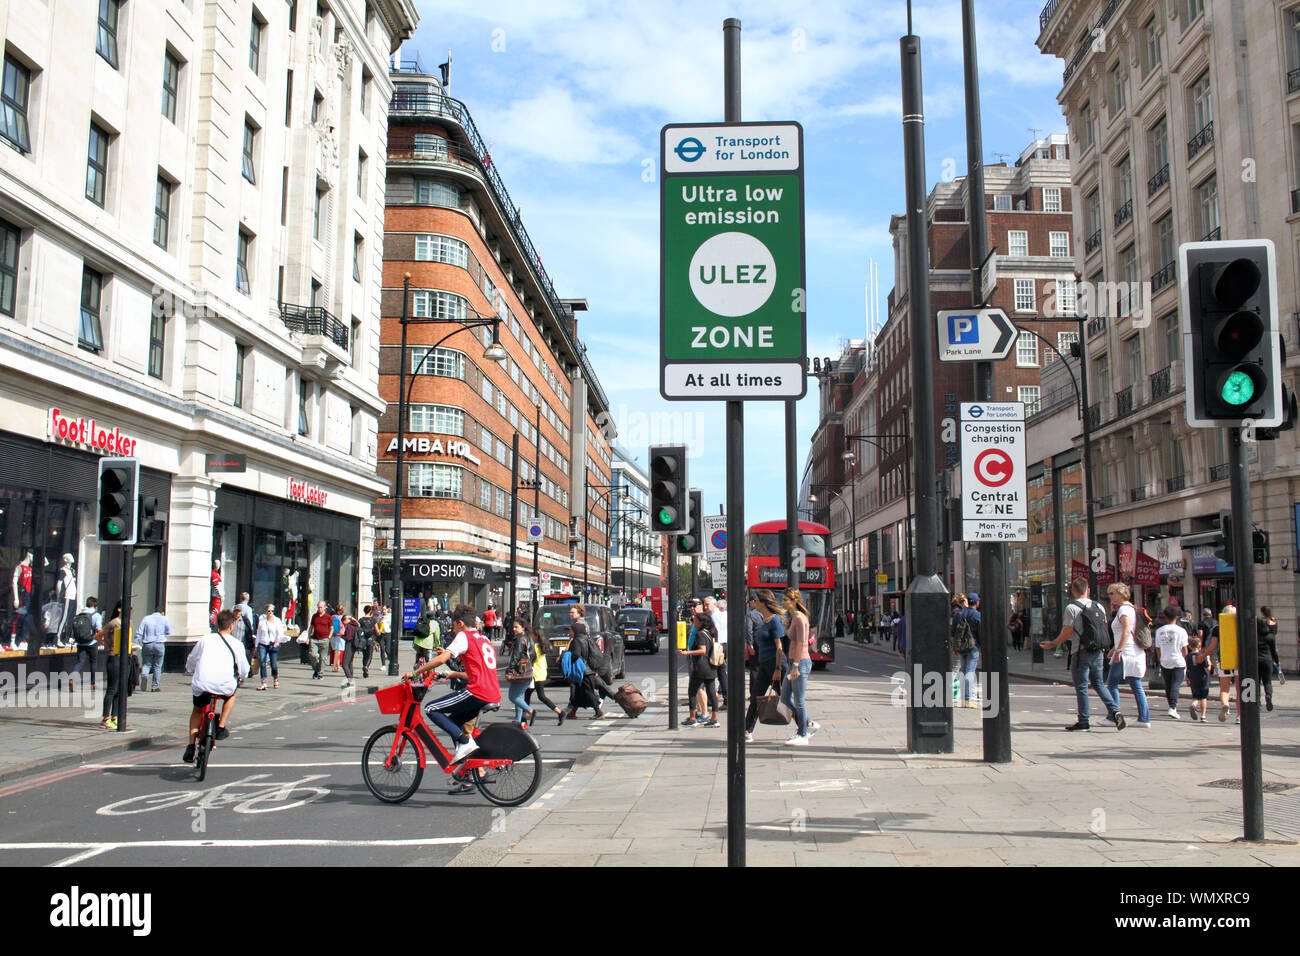 Un ultra low emission zone (ULEZ) panneau à l'extrémité de Marble Arch, d'Oxford Street, Londres. Banque D'Images